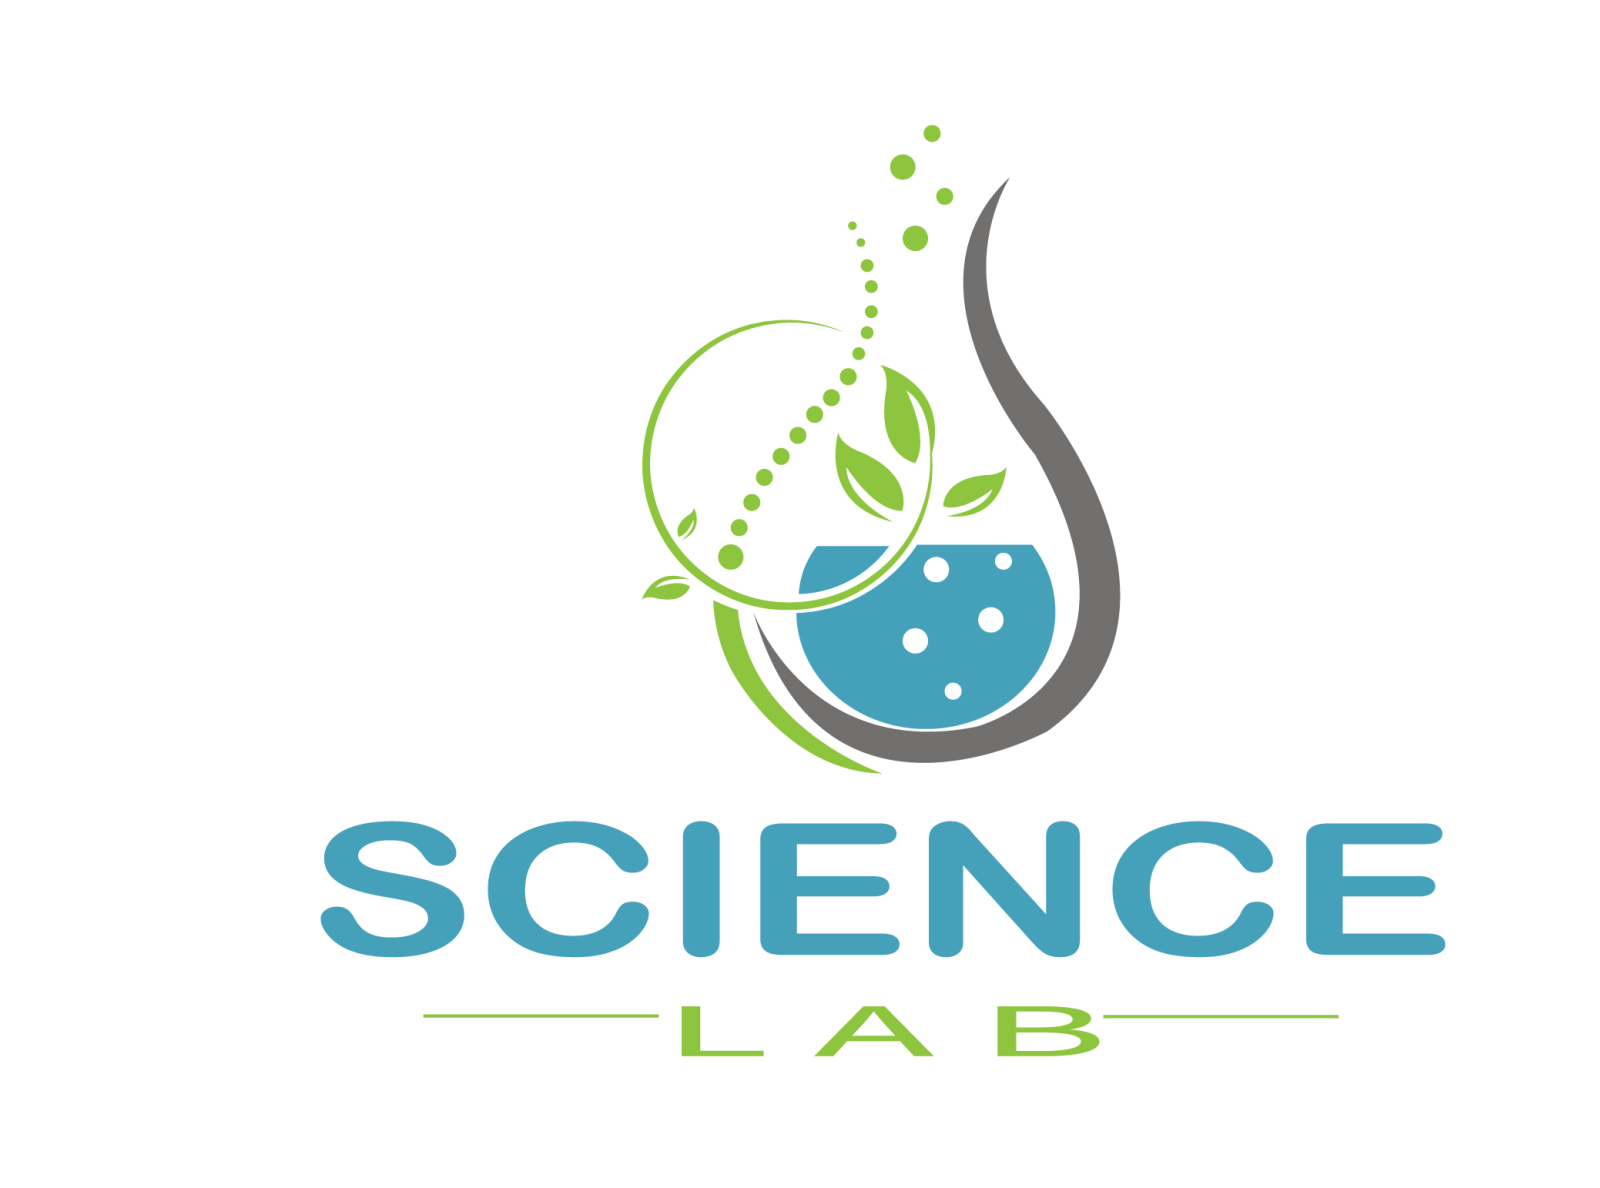 science lab logo by sajib rana on Dribbble